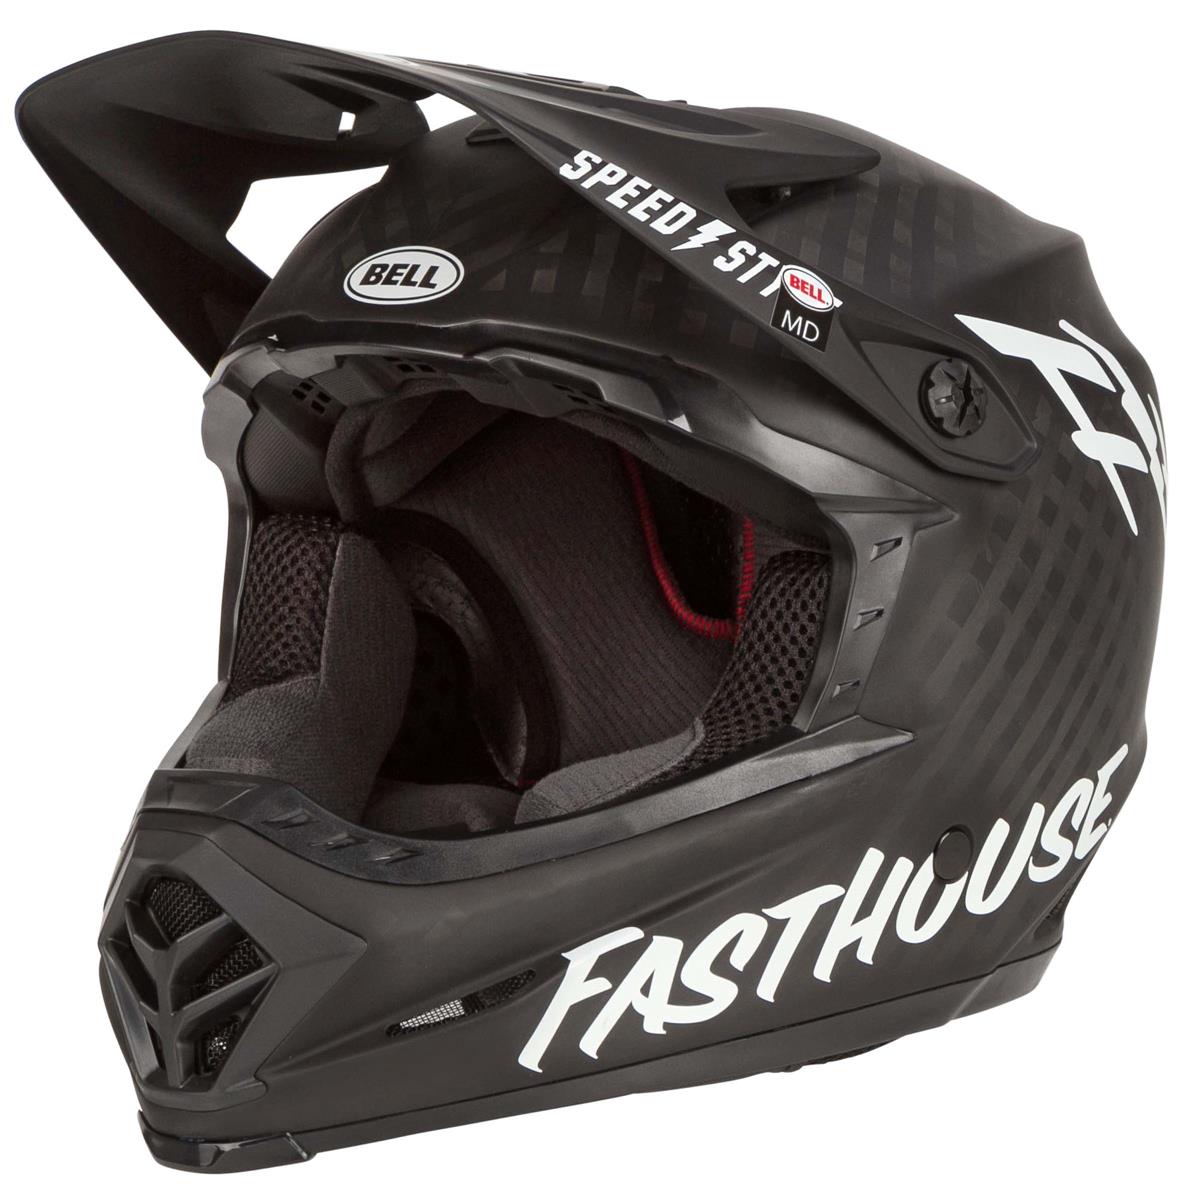 Bell Downhill MTB Helmet Full-9 Fasthouse - Matte - Black/White